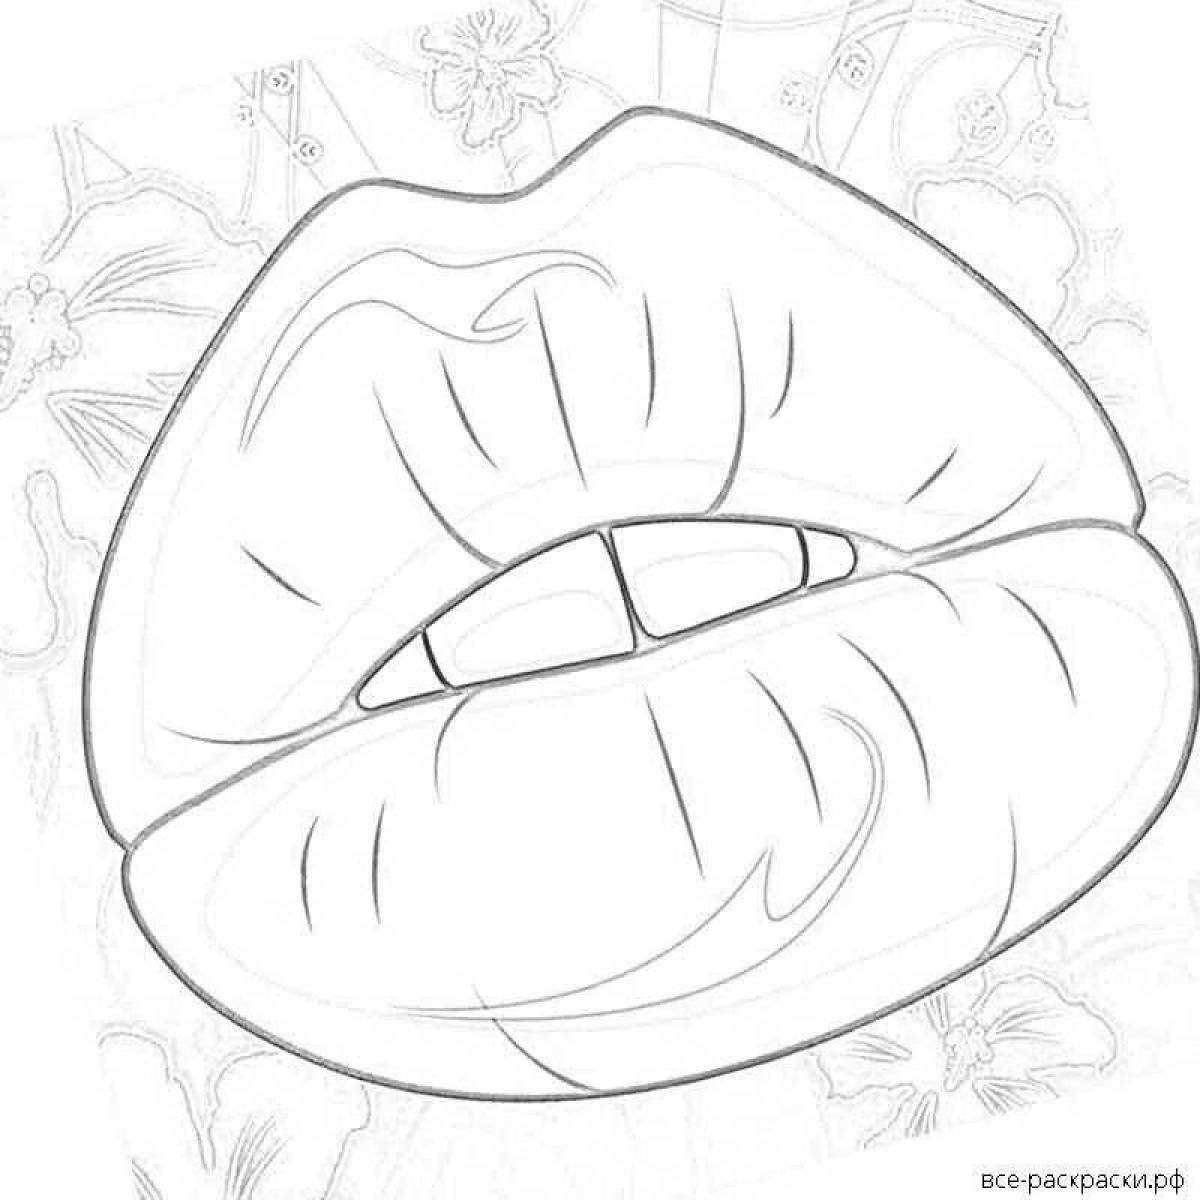 Fun lip pattern